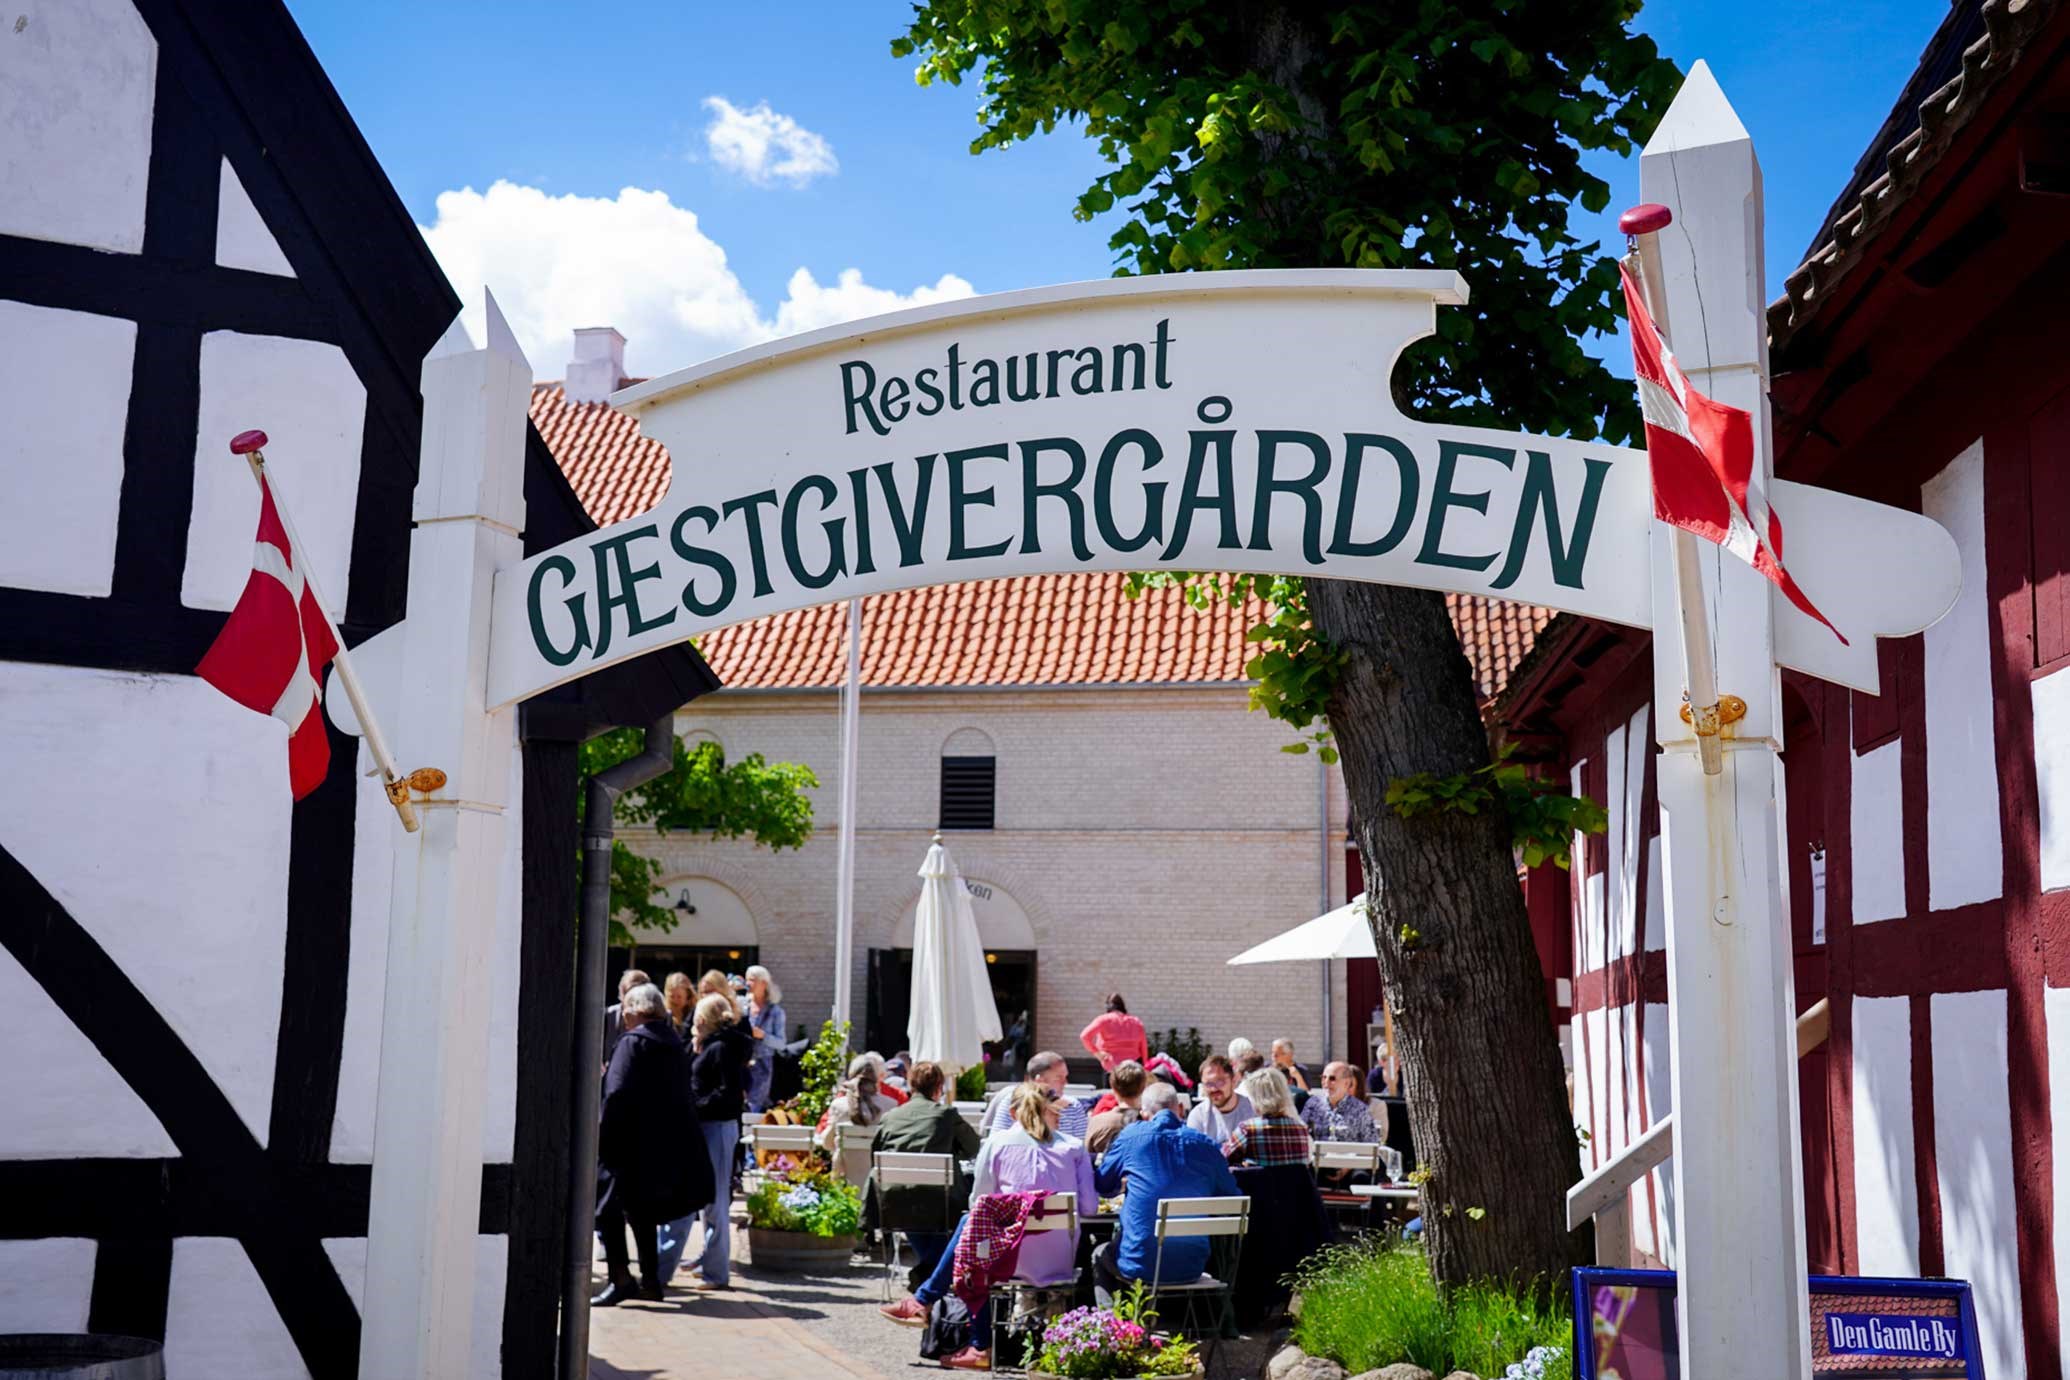 Restaurant <br> Gæstgiver&shygården